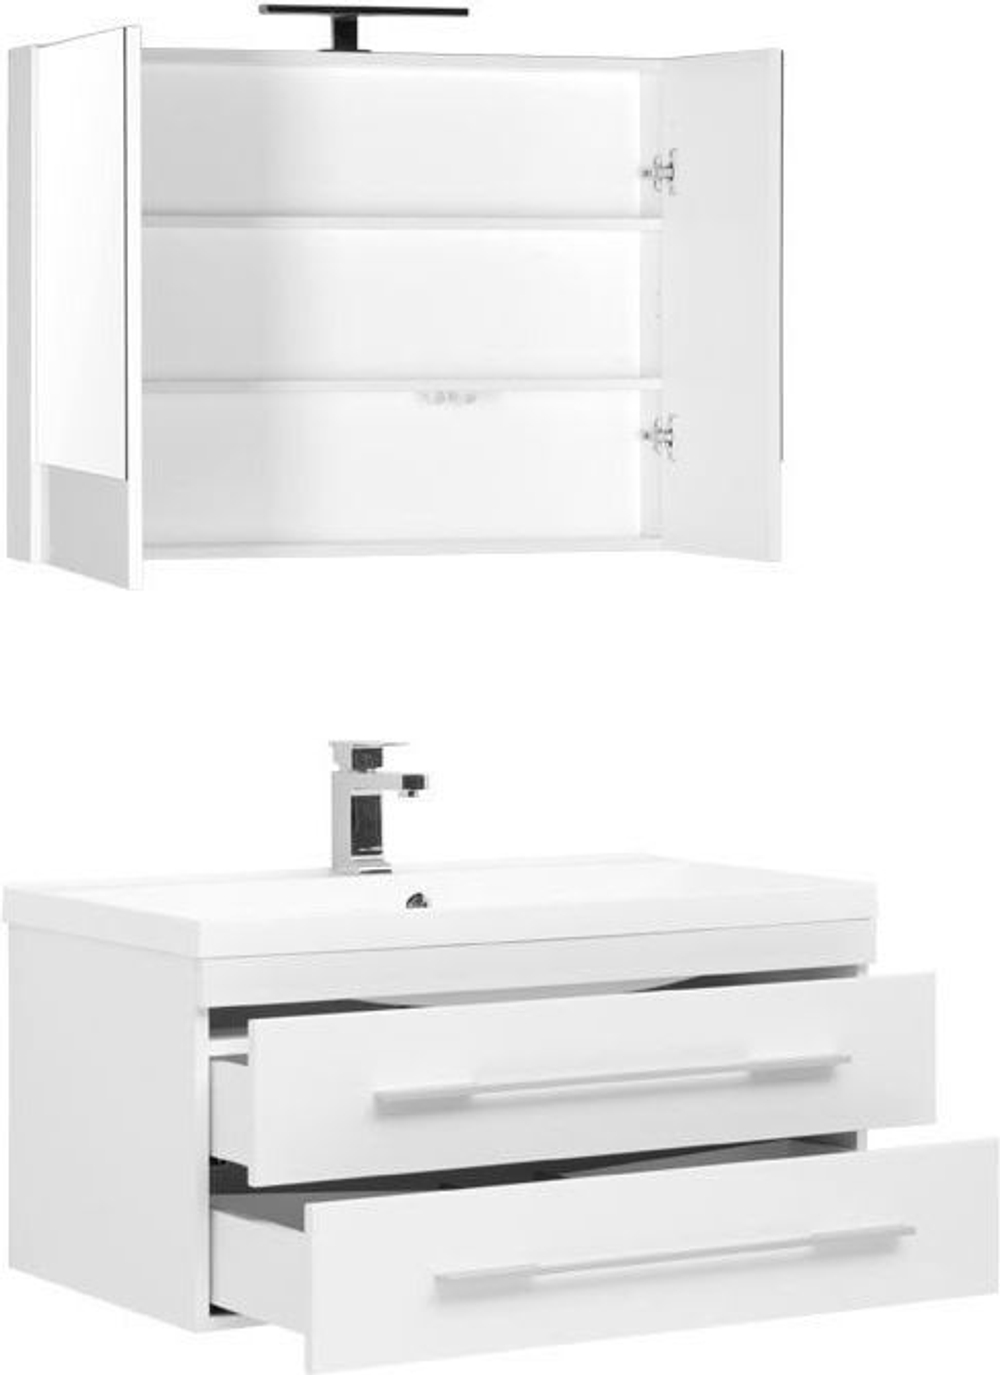 Комплект мебели для ванной Aquanet Нота 90 белый (камерино)